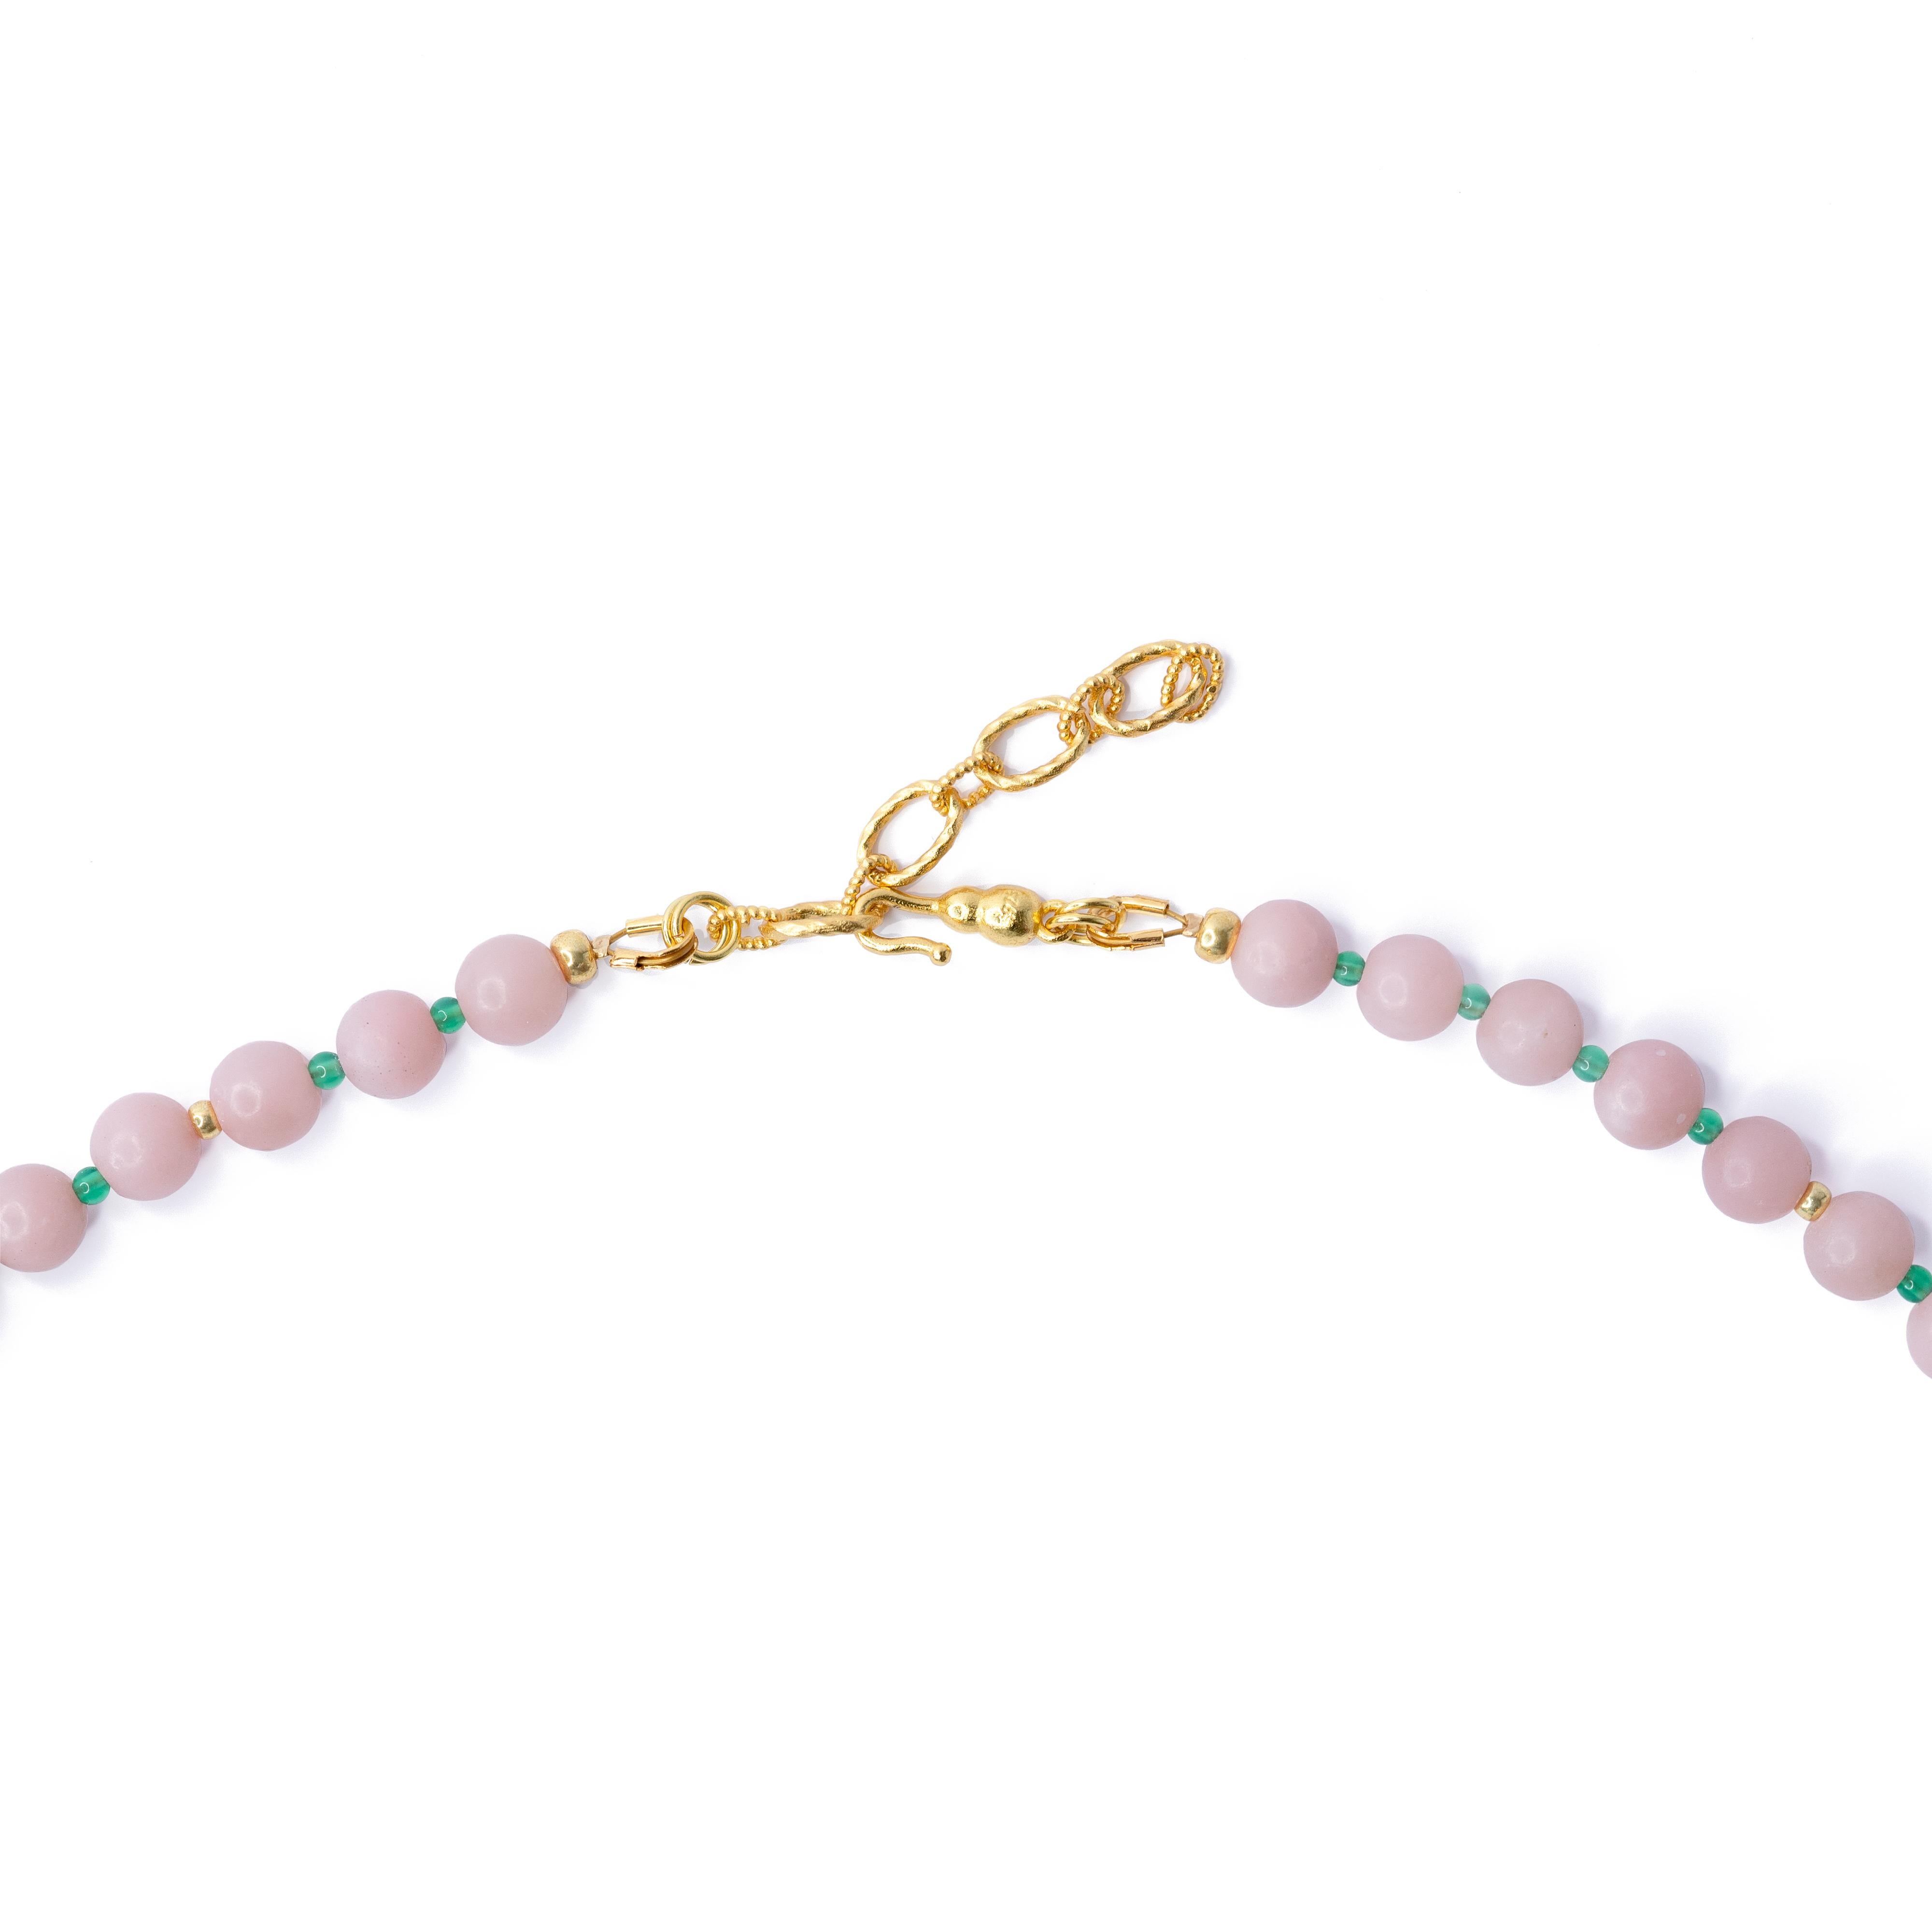 Diese Halskette ist aus rosafarbenen peruanischen Opal- und Türkisperlen gefertigt und mit einem verstellbaren Haken aus 22 K vergoldetem Sterlingsilber versehen.
	- •	20